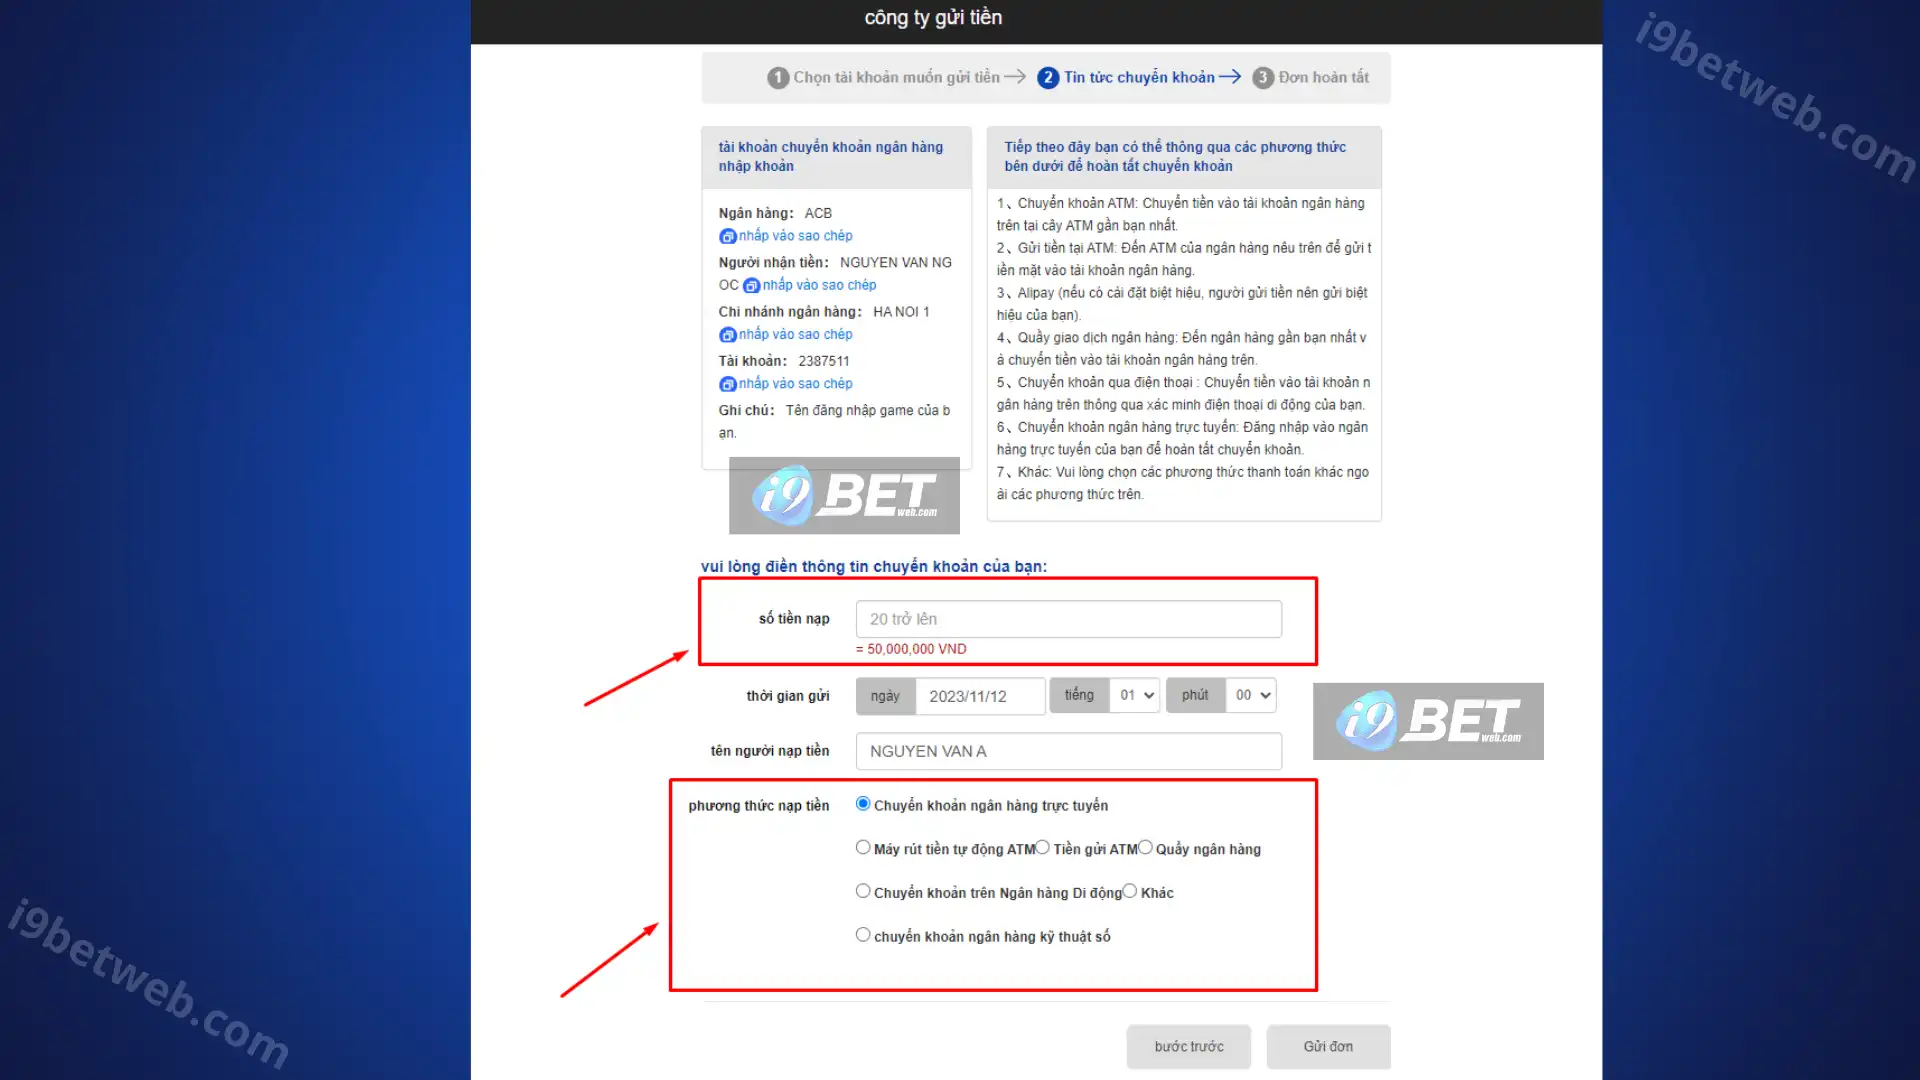 Bước 2 Phương thức nạp tiền i9BET thông qua công ty gửi tiền